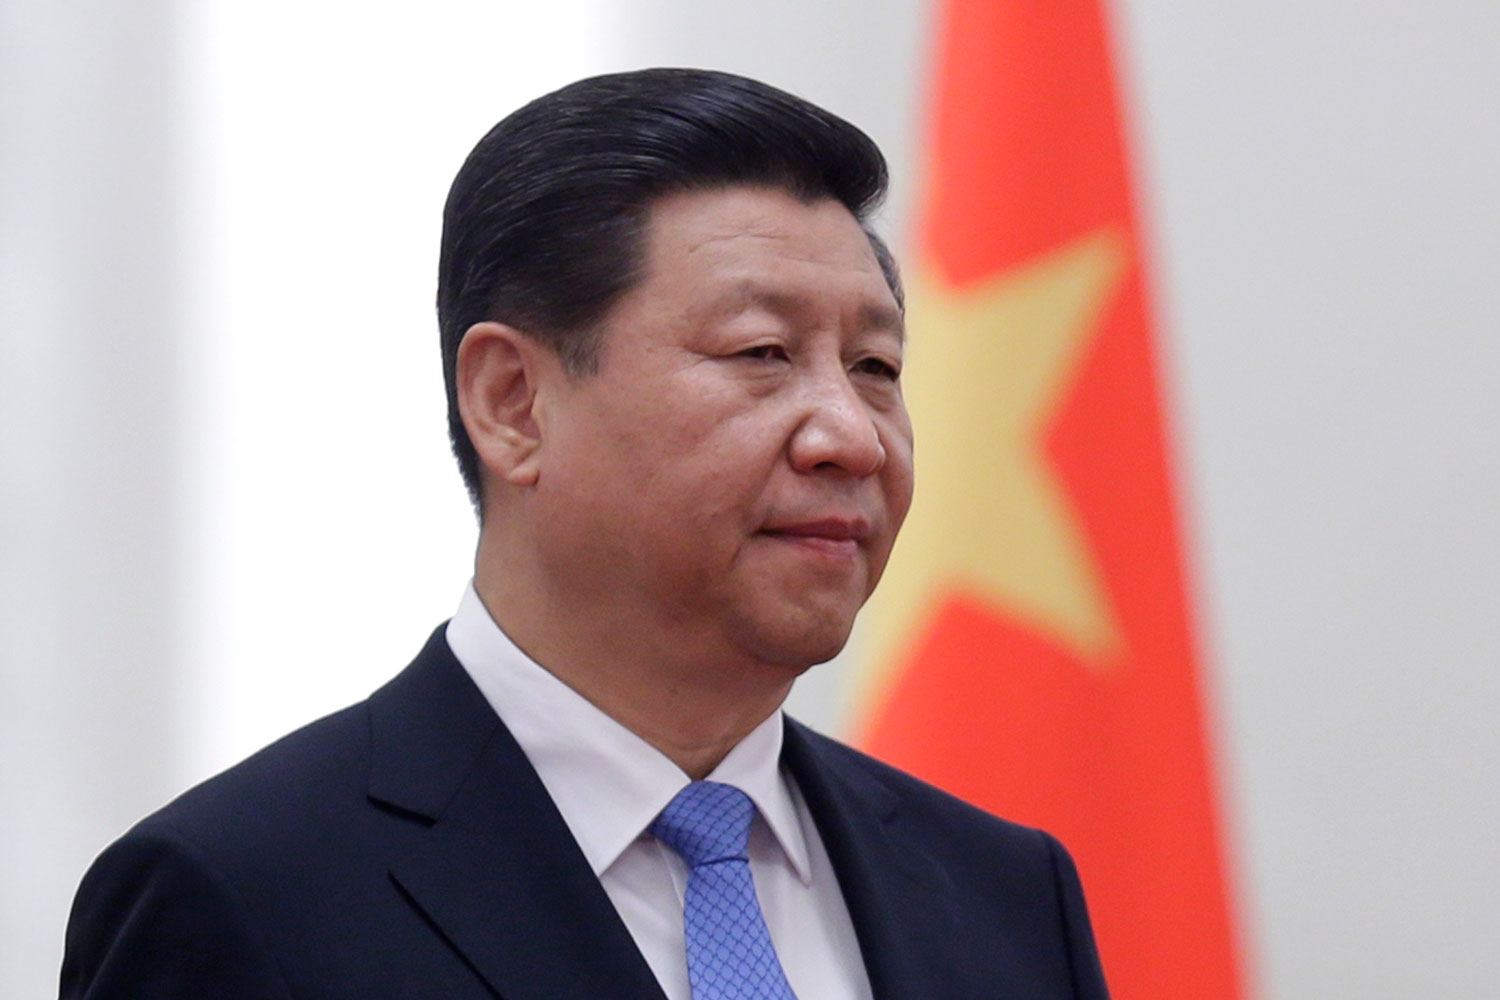 El presidente chino Xi Jinping luchará contra la corrupción en el seno del Partido Comunista